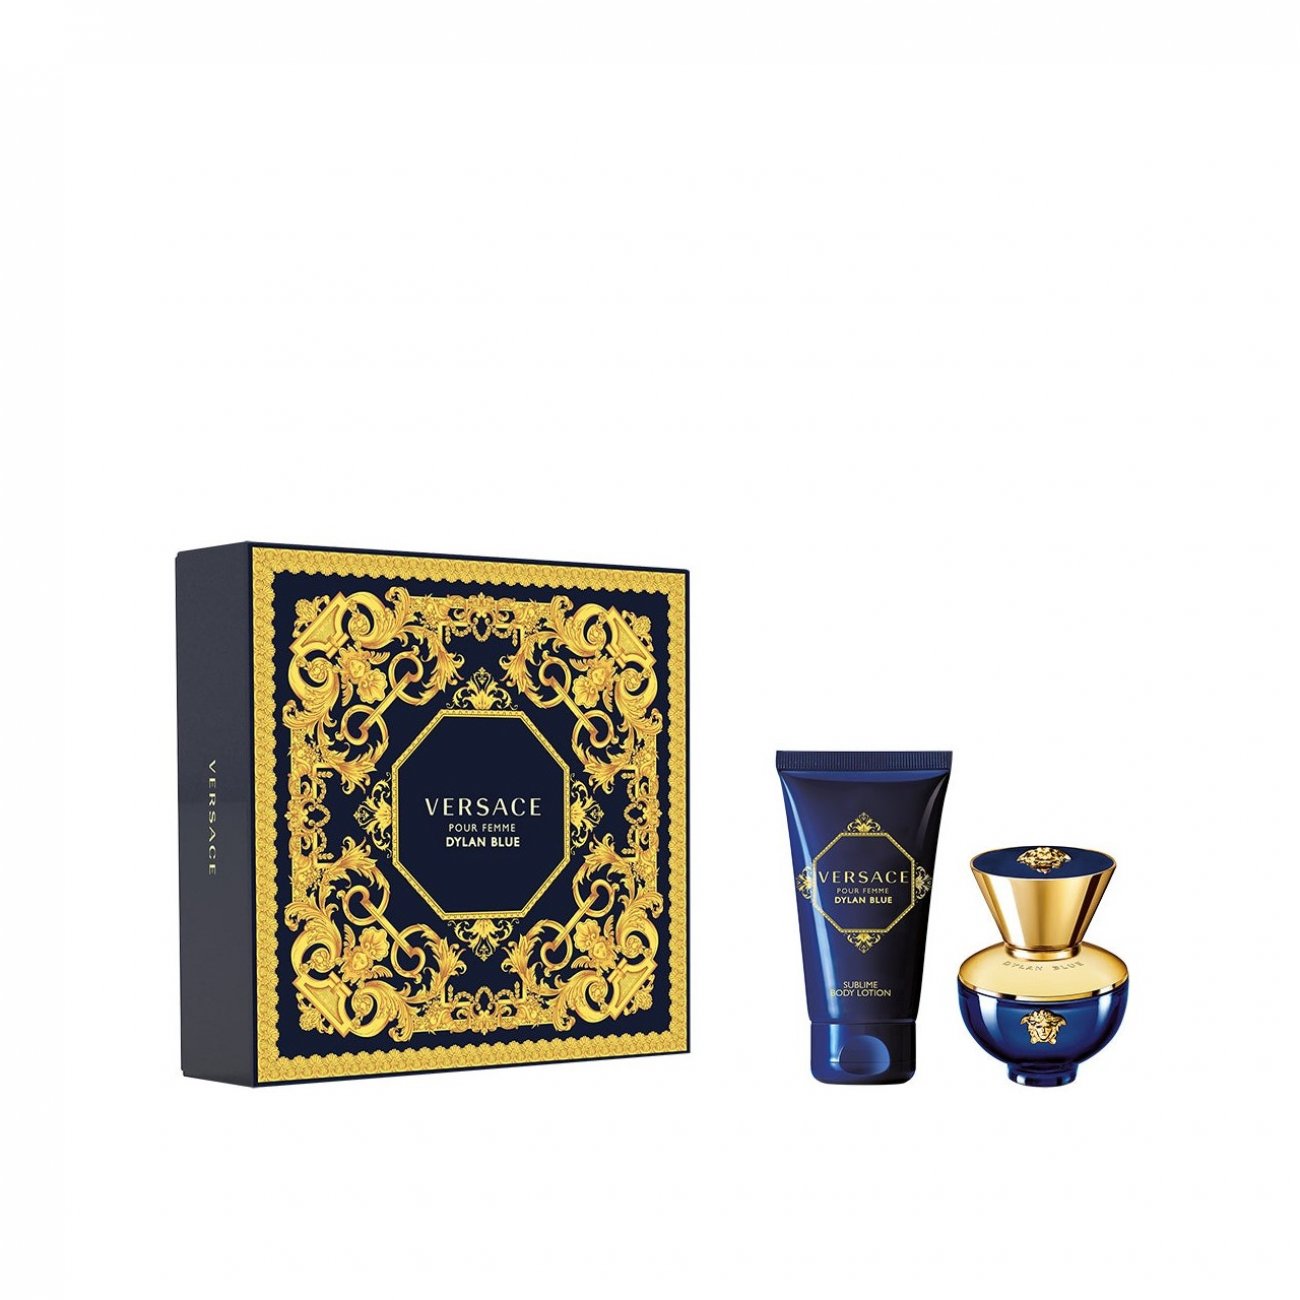 Buy GIFT SET:Versace Dylan Blue Pour Femme Eau de Parfum 30ml Coffret Austria